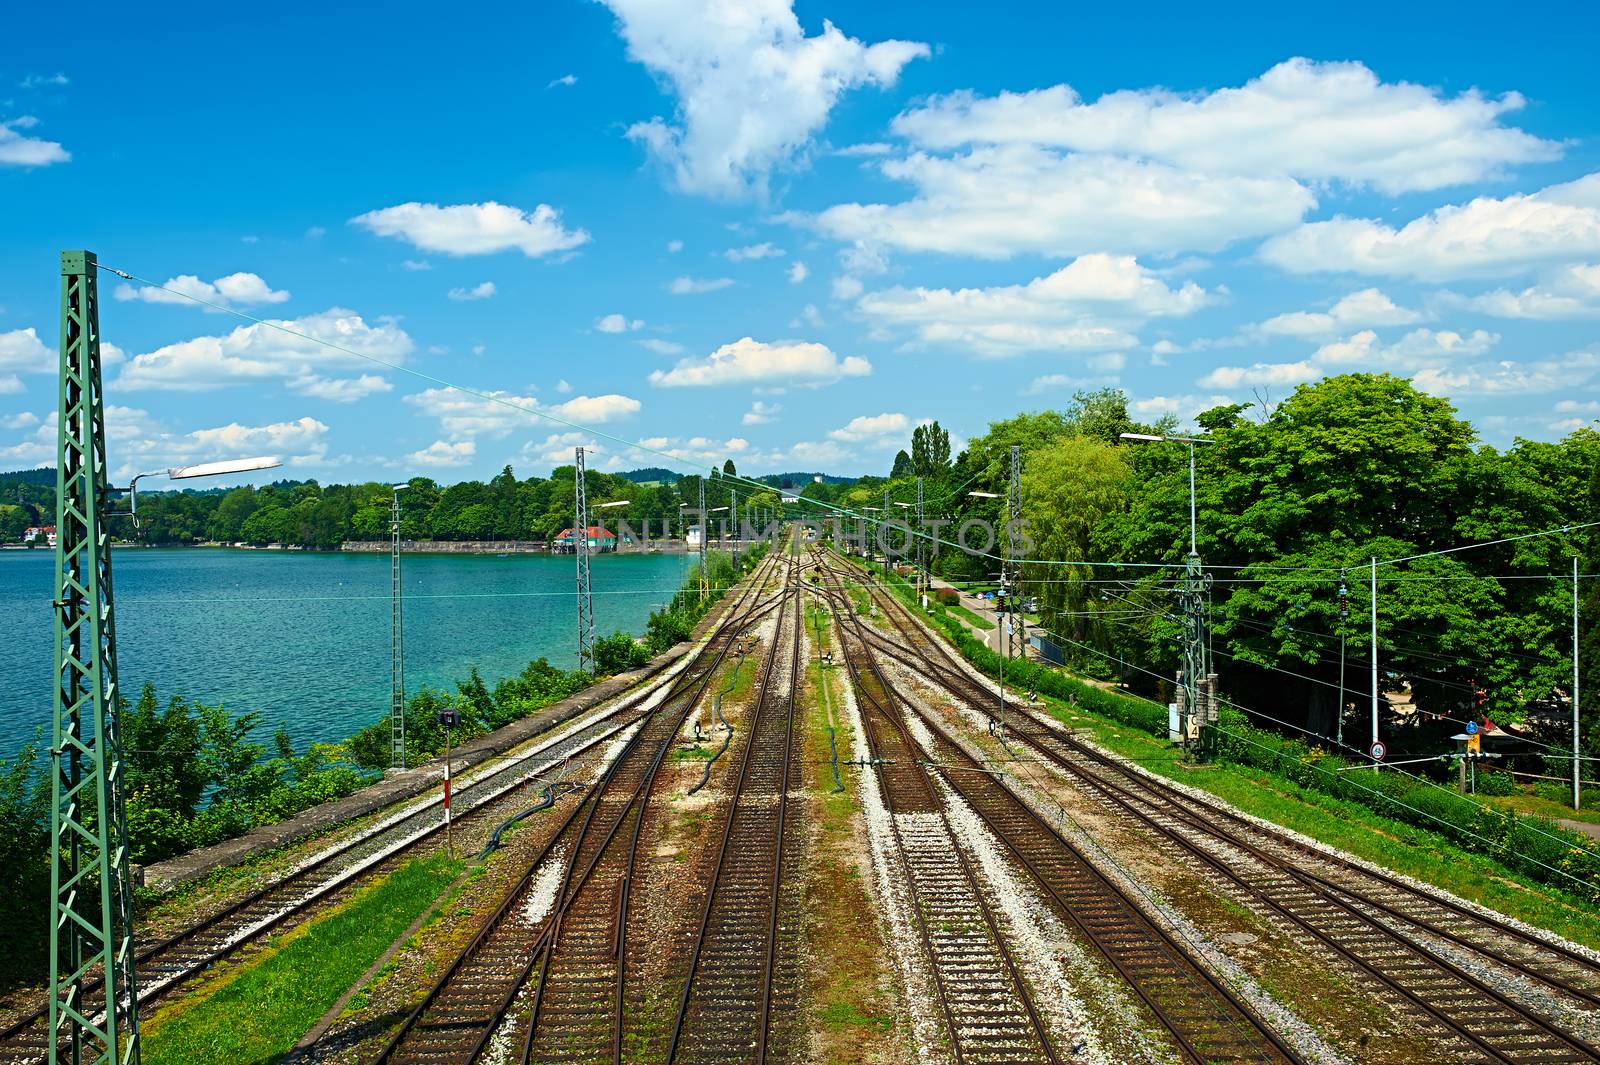 Railway tracks in a rural scene at Lindau by haveseen